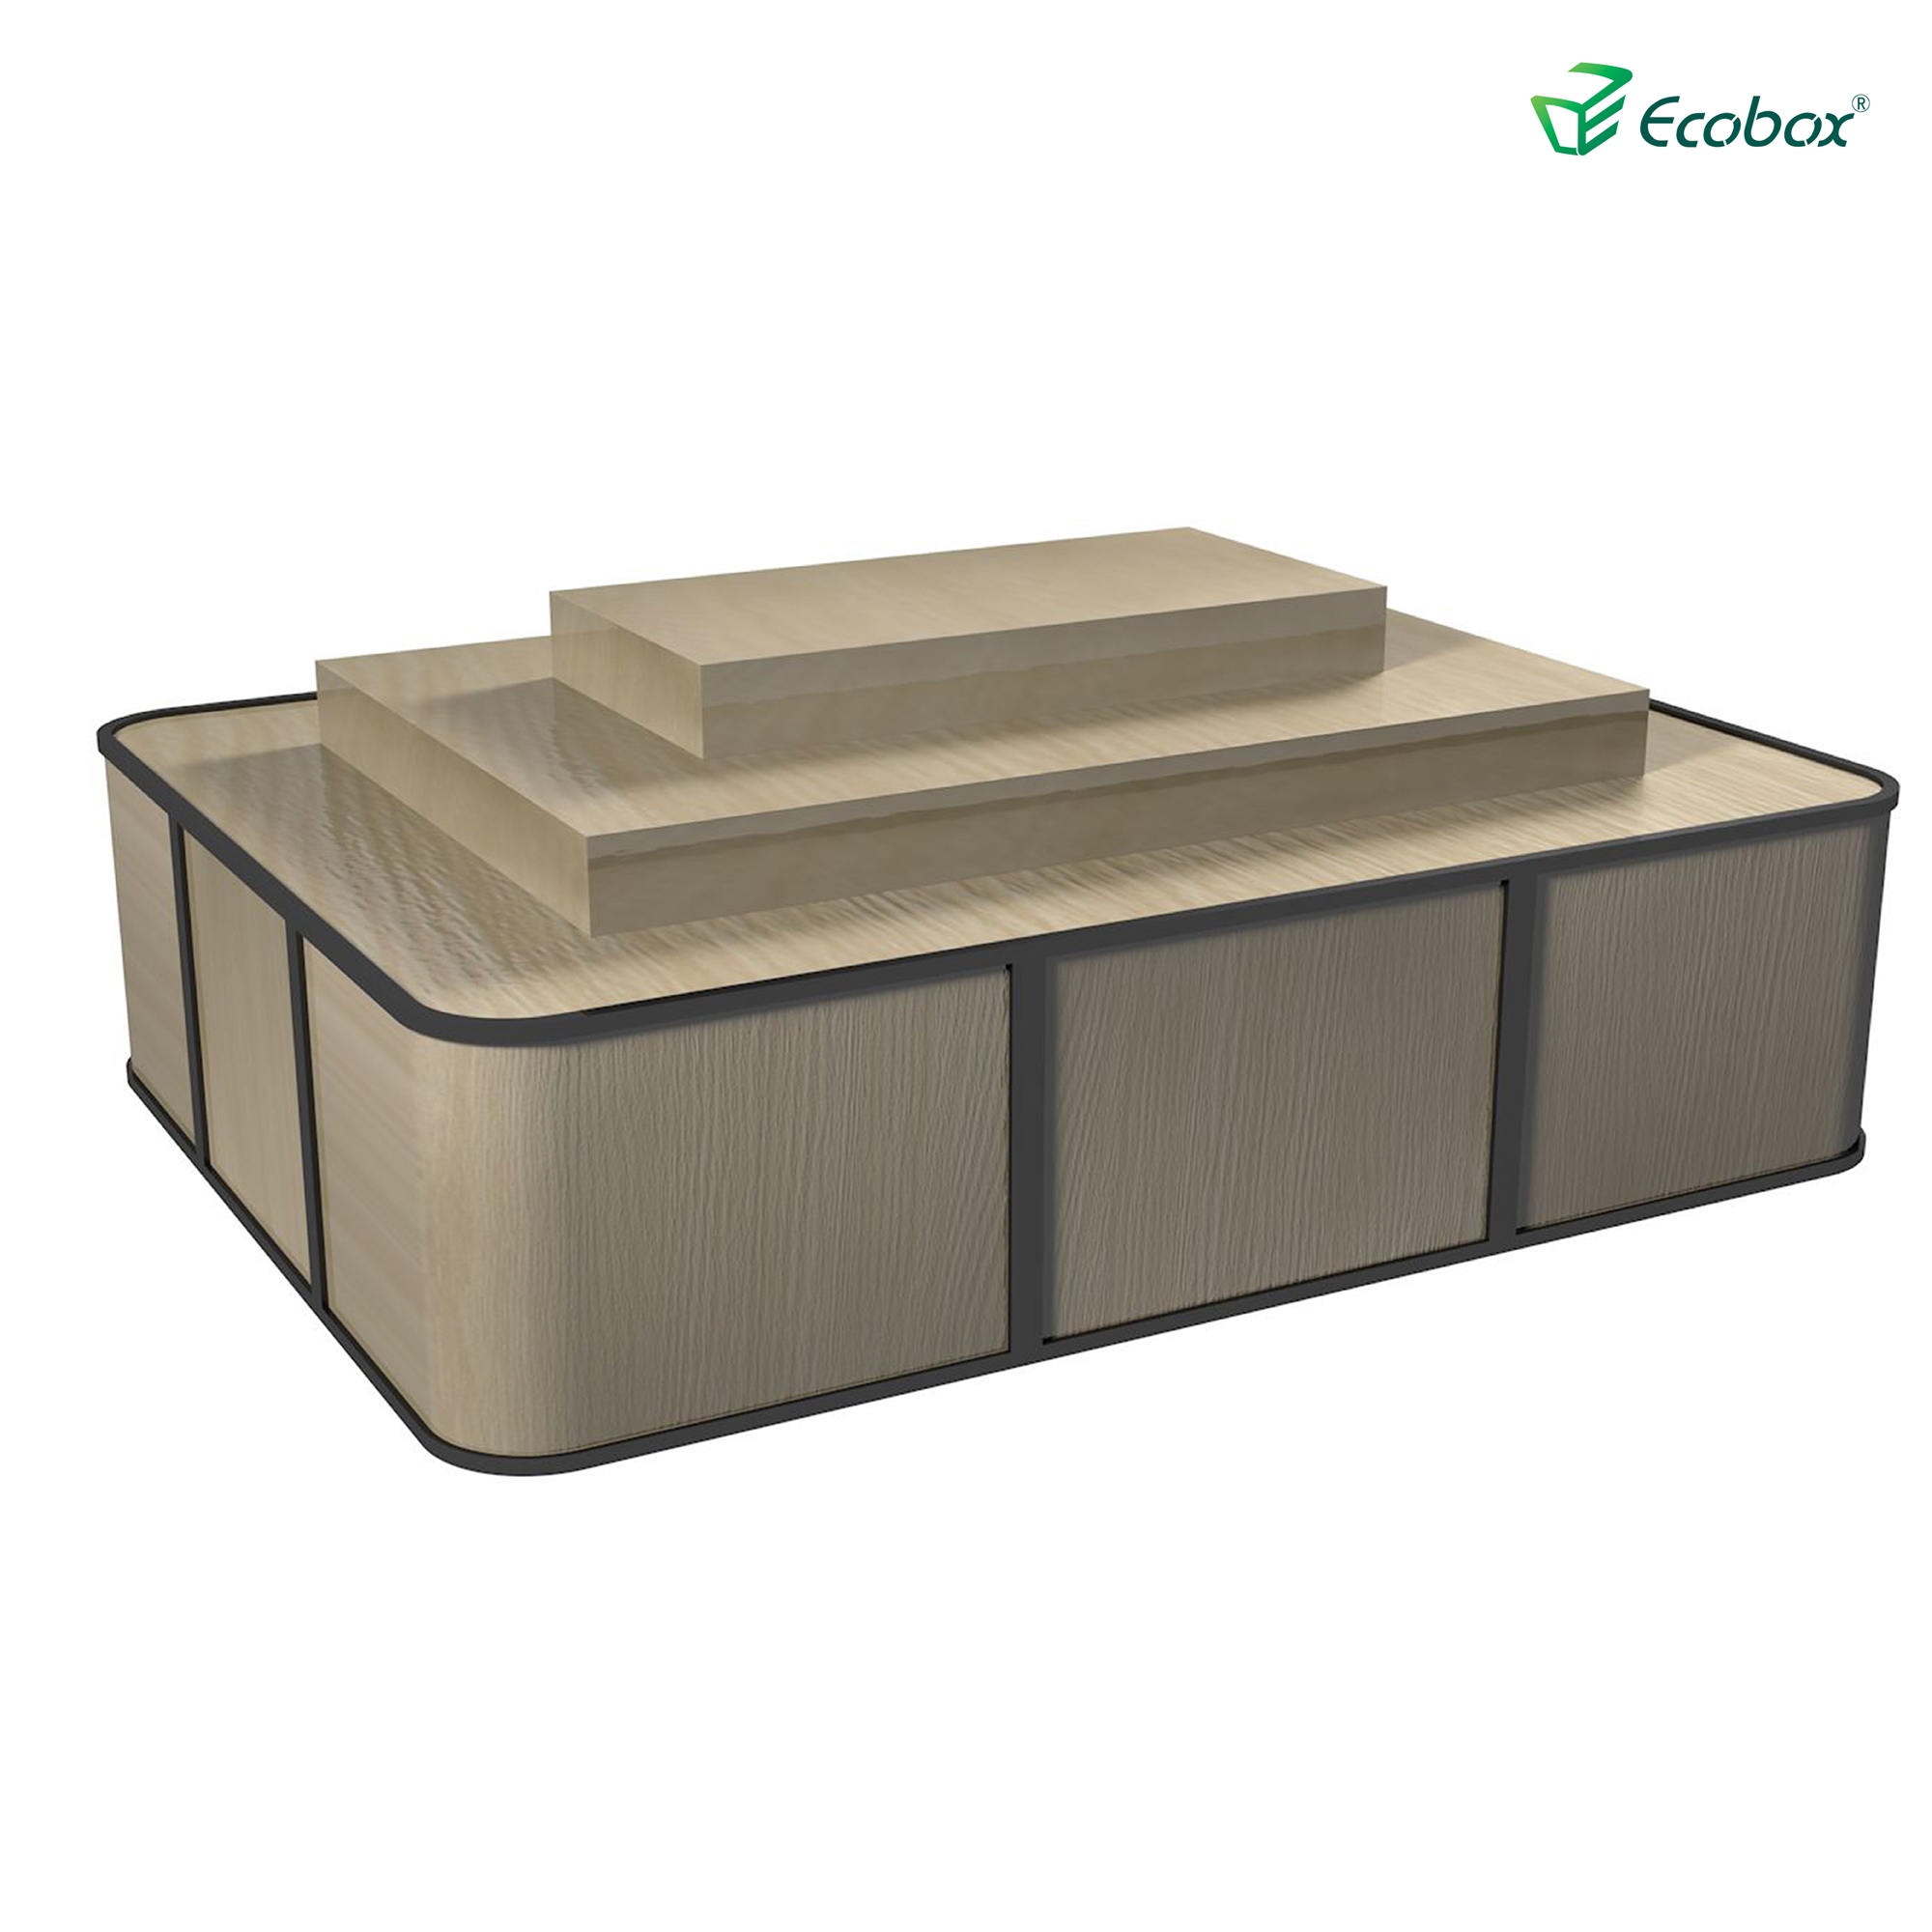 Regal der Ecobox G004-Serie mit Ecobox-Großbehältern für Supermärkte